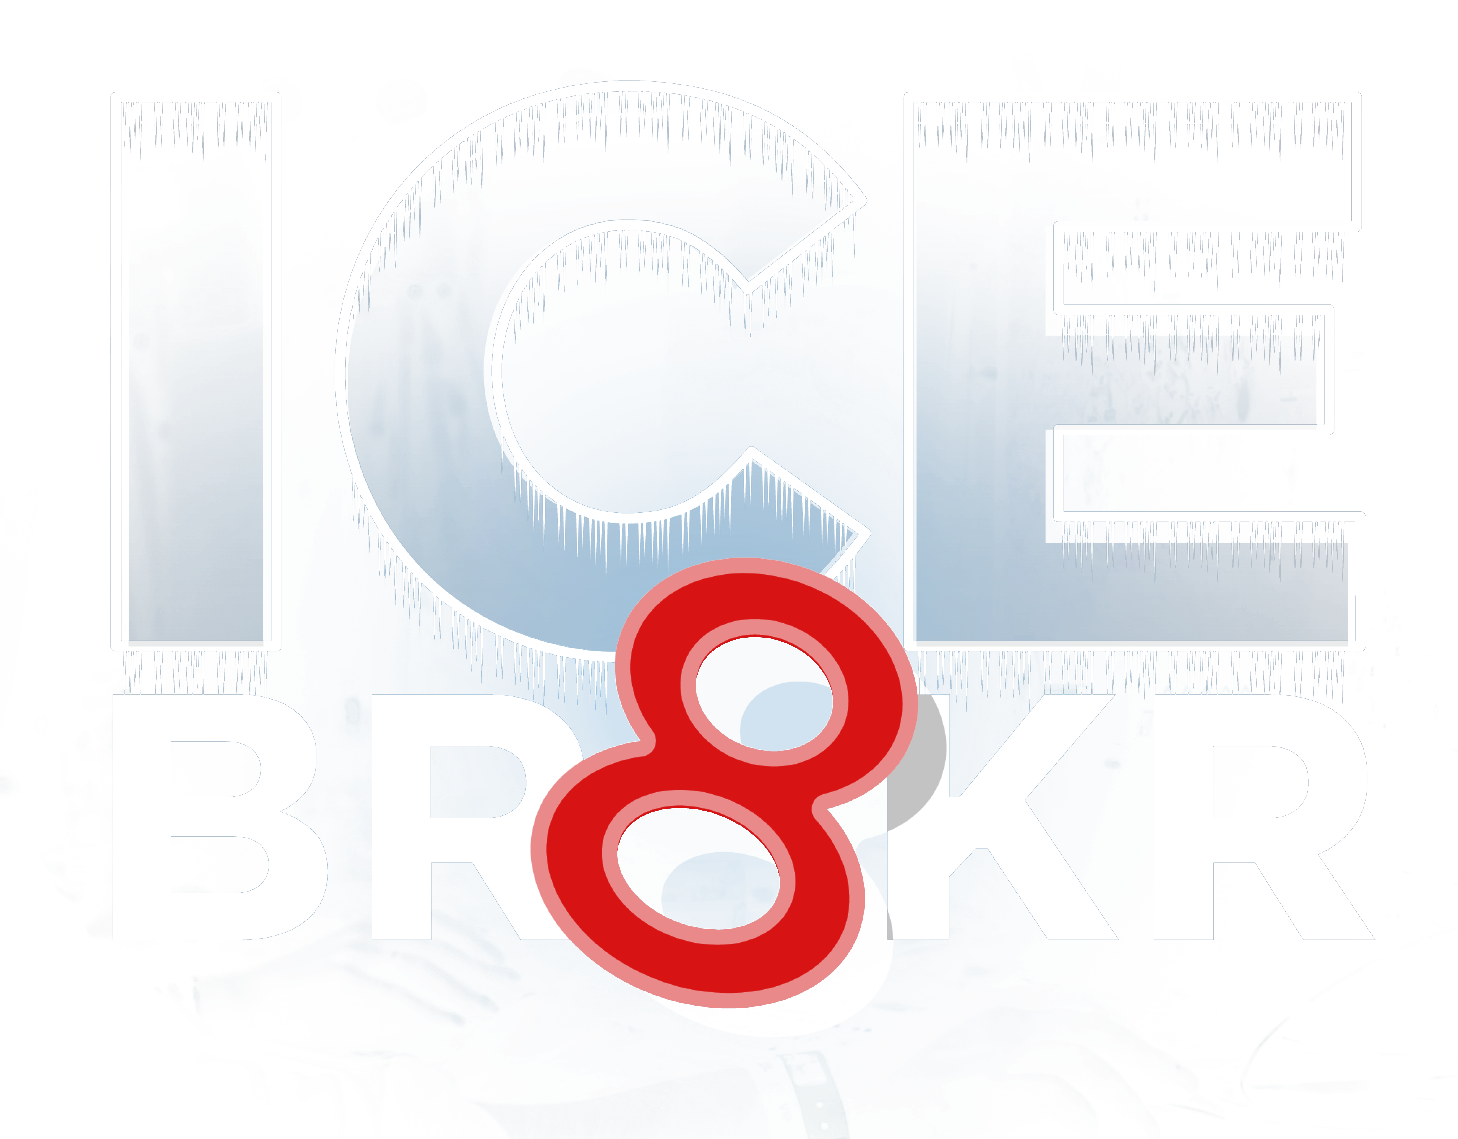 IceBr8kr